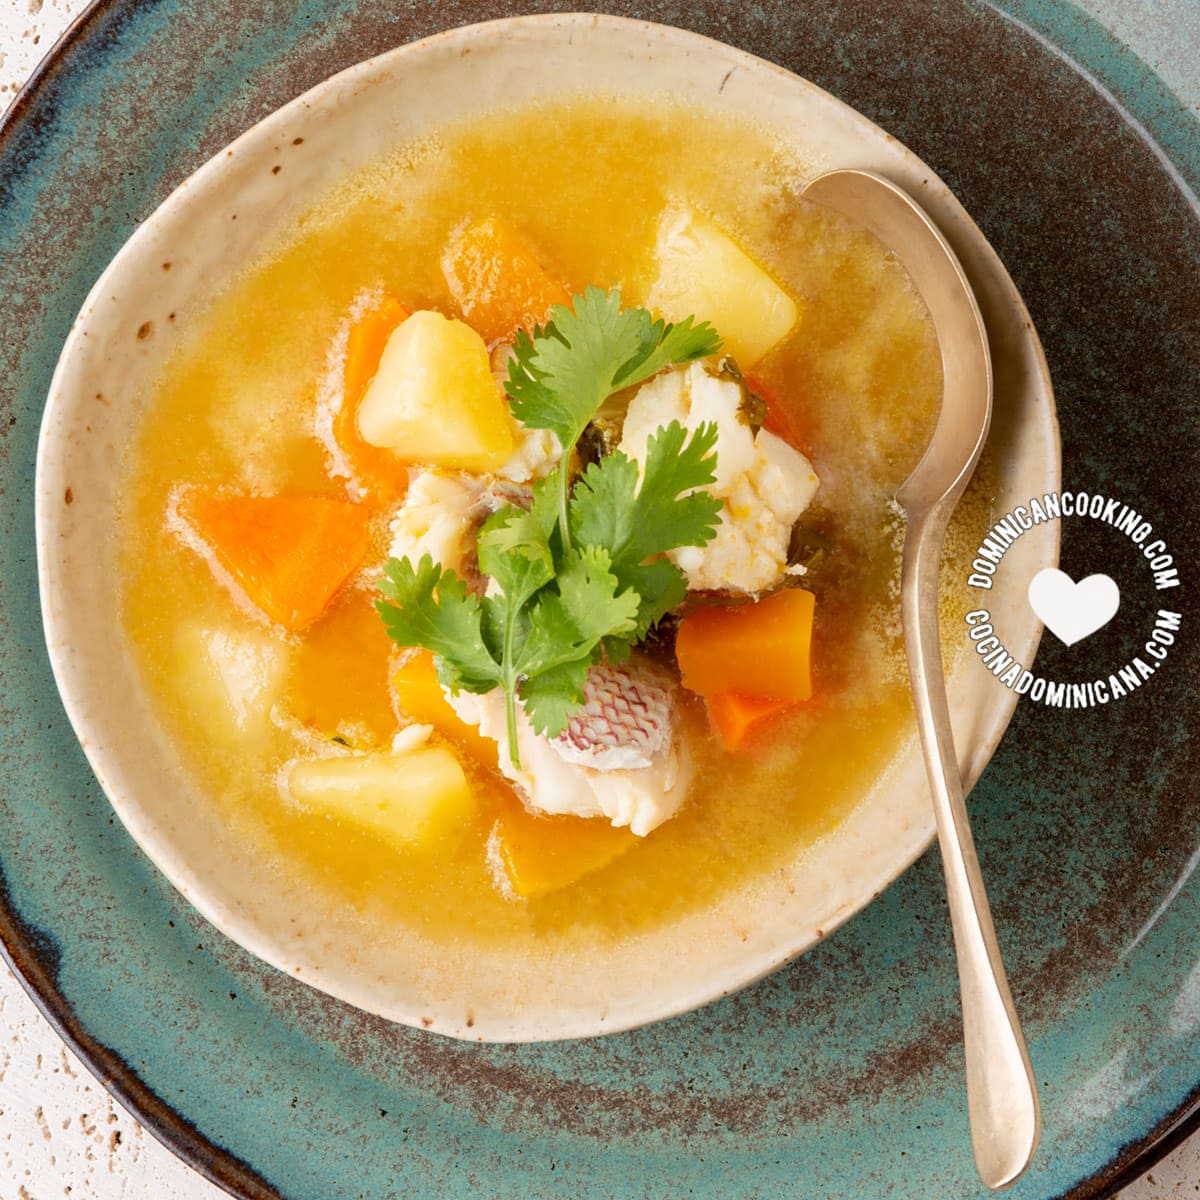 Sopa de pescado (fish head soup)